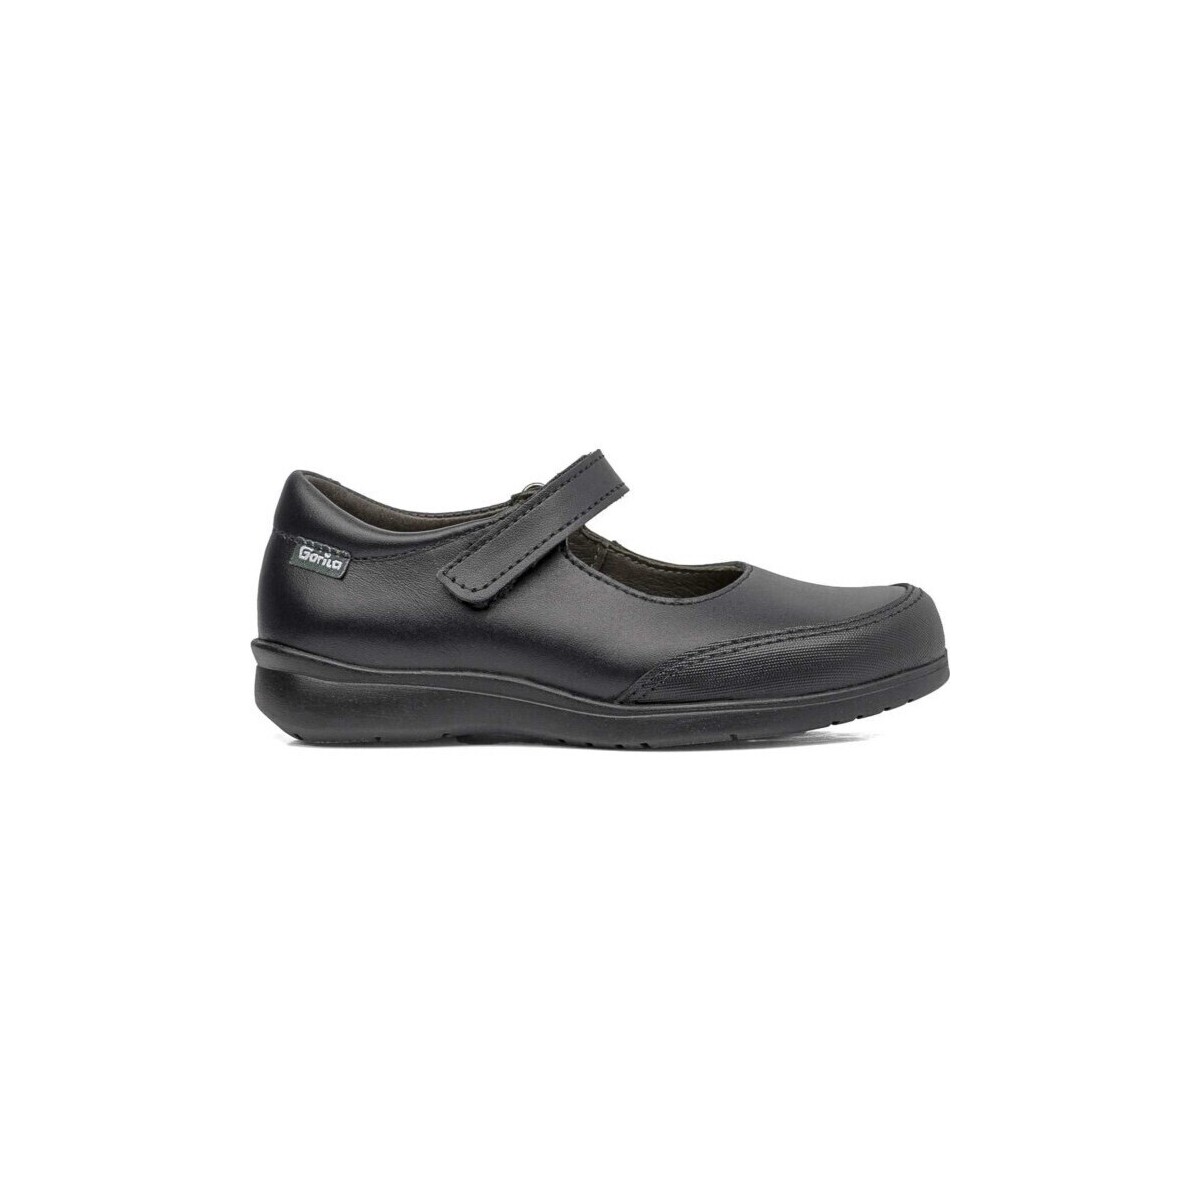 Cipők Mokkaszínek Gorila 27753-24 Fekete 